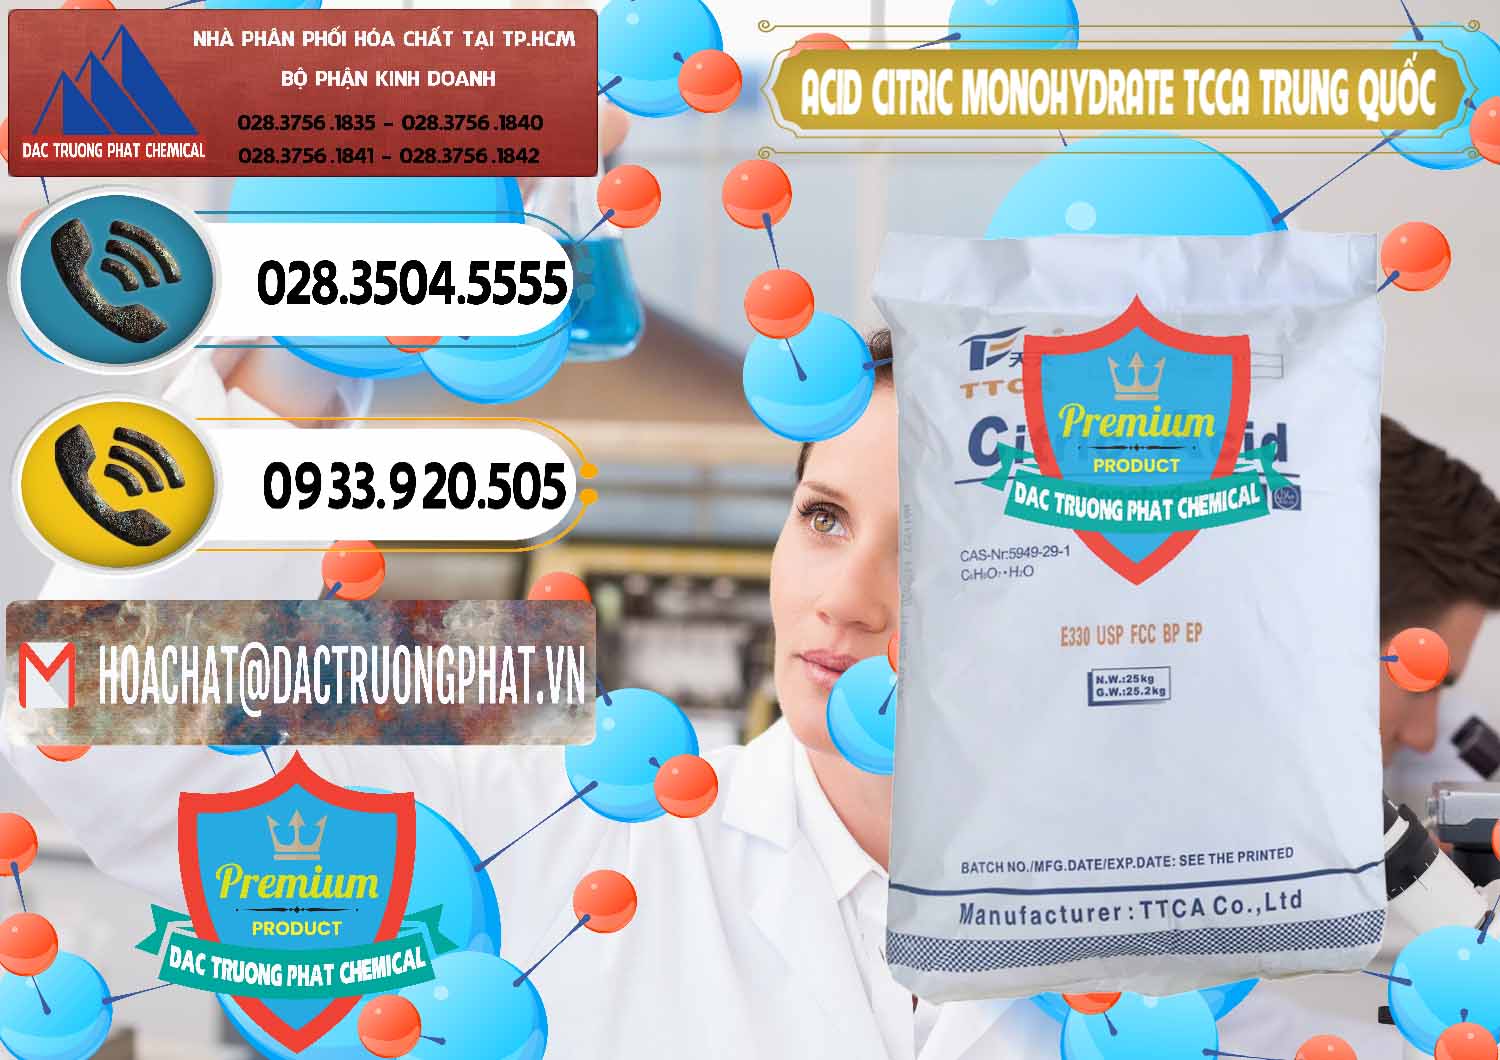 Đơn vị bán & cung cấp Acid Citric - Axit Citric Monohydrate TCCA Trung Quốc China - 0441 - Chuyên cung cấp - kinh doanh hóa chất tại TP.HCM - hoachatdetnhuom.vn